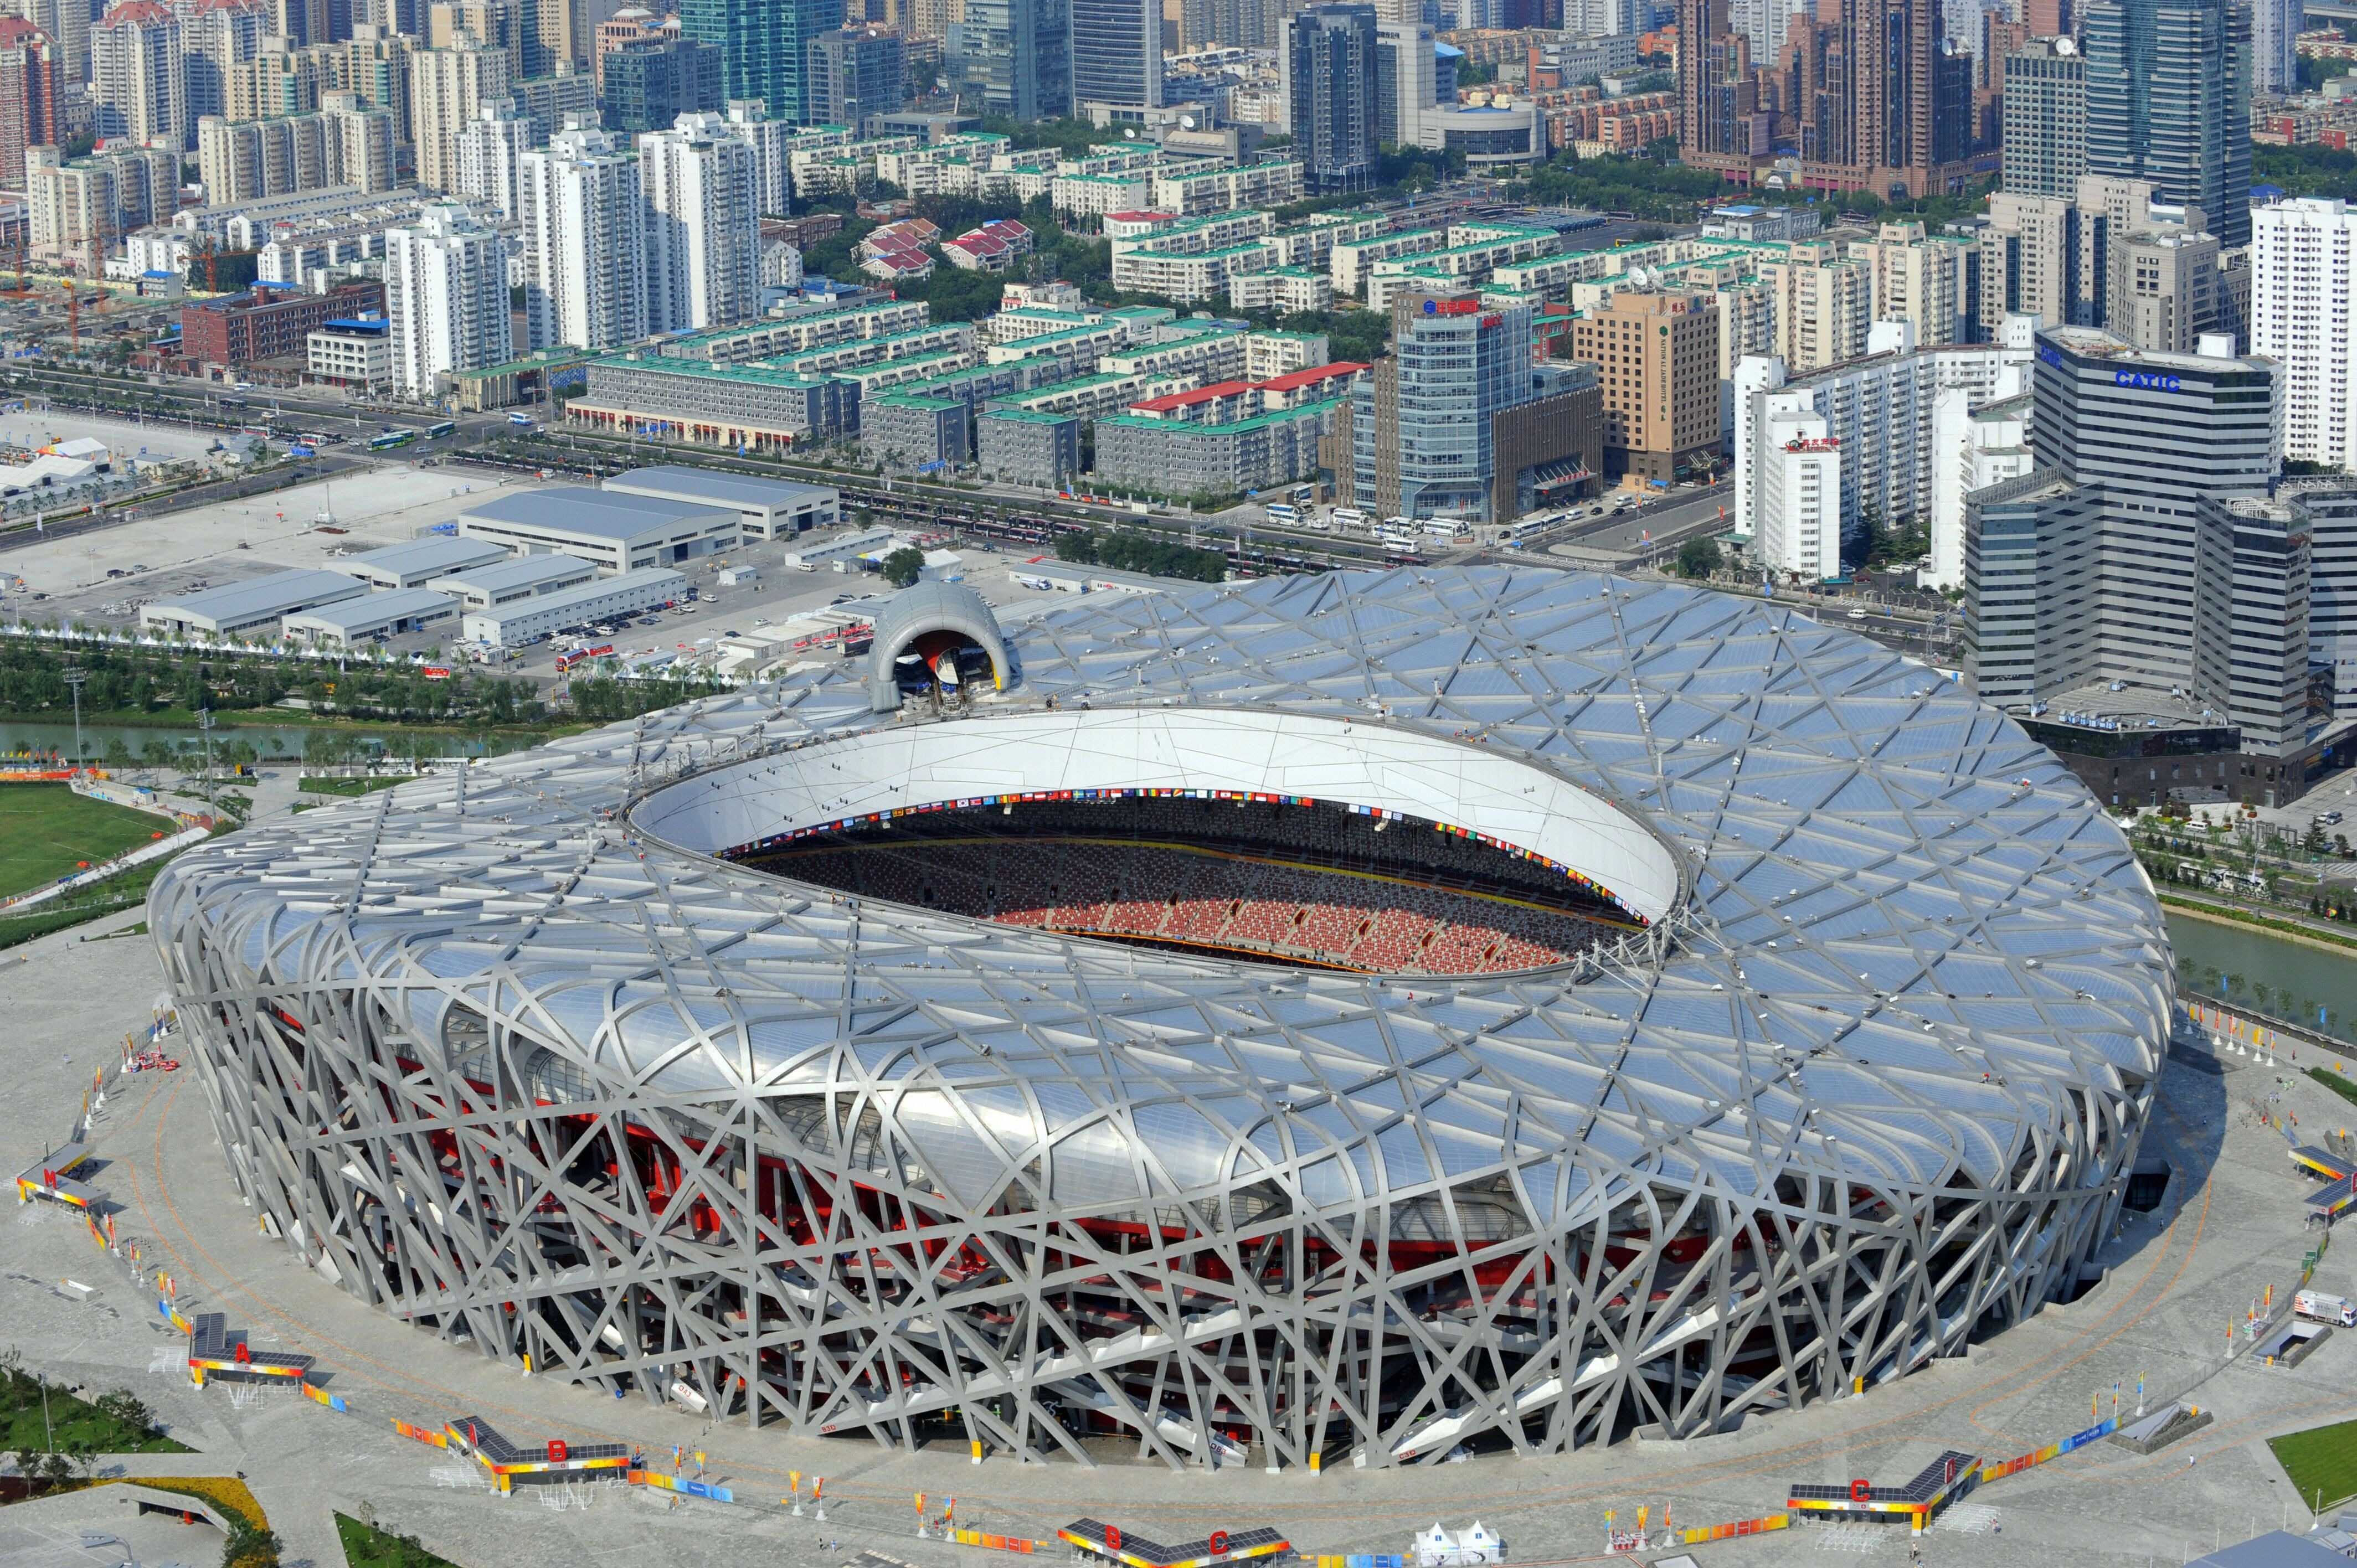 Kiến trúc tổ chim độc đáo của sân vận động Quốc gia Bắc Kinh - iVIVU.com